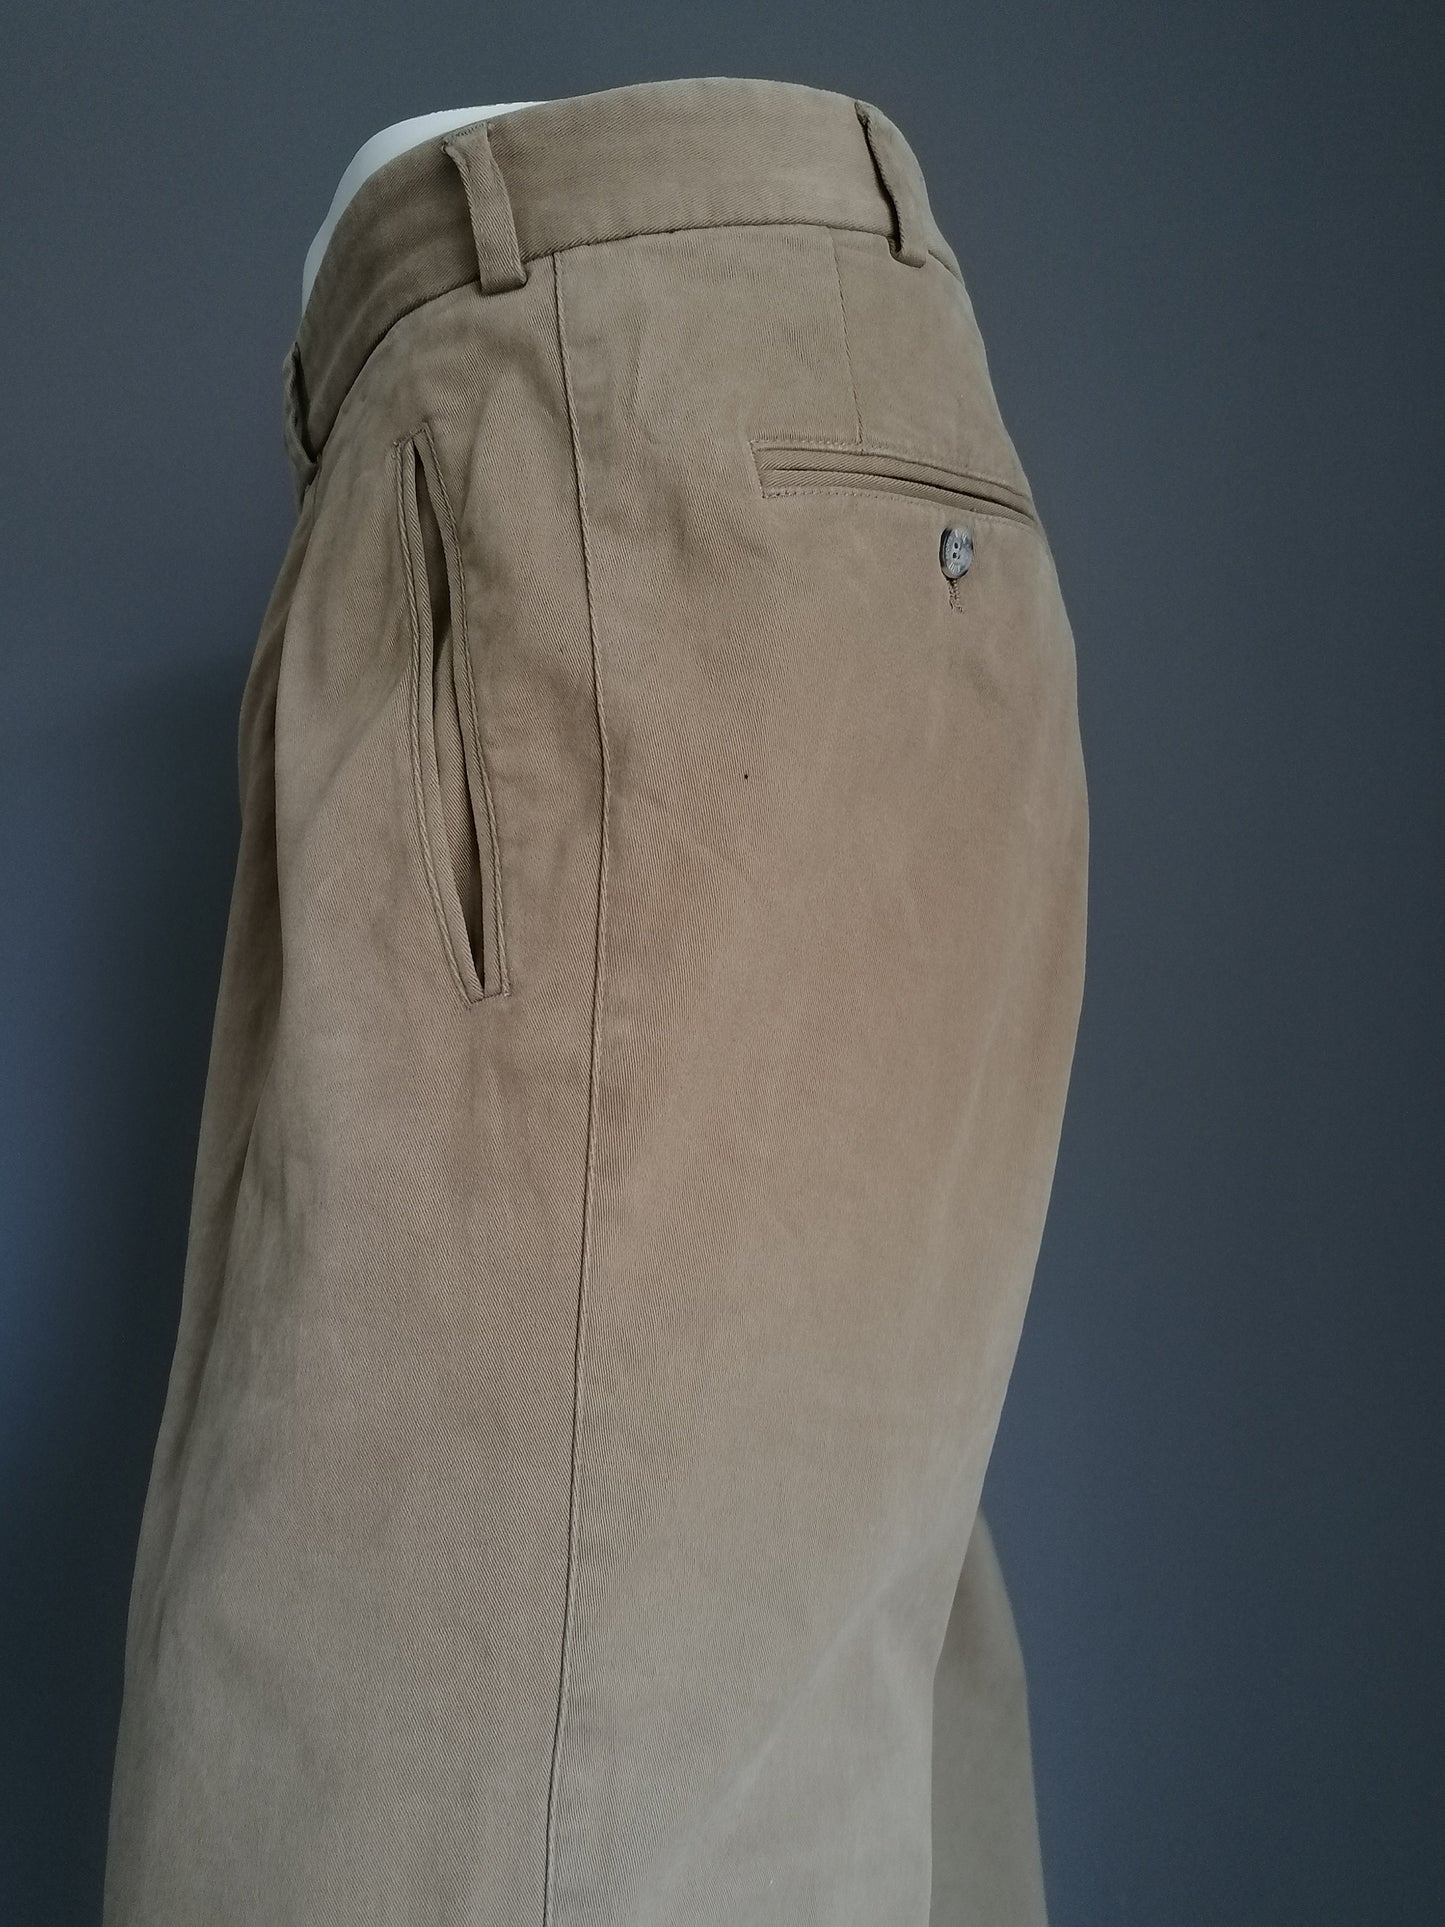 Pantalones Hiltl. Coloreado de color beige. Tamaño 52 / l